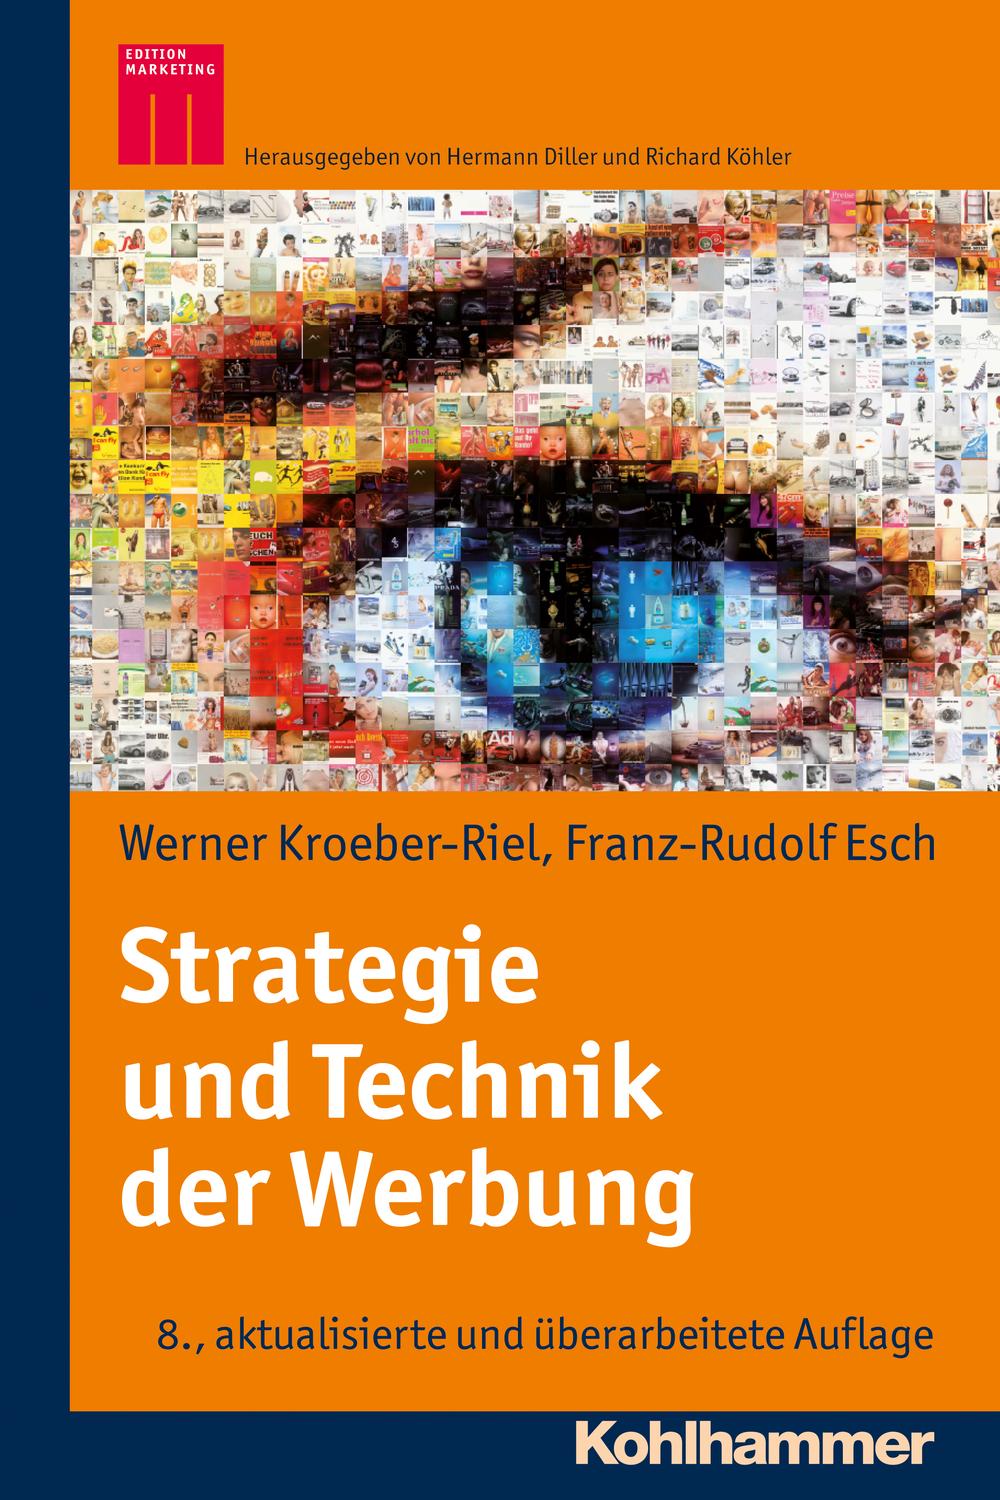 Strategie und Technik der Werbung - Werner Kroeber-Riel, Franz-Rudolph Esch